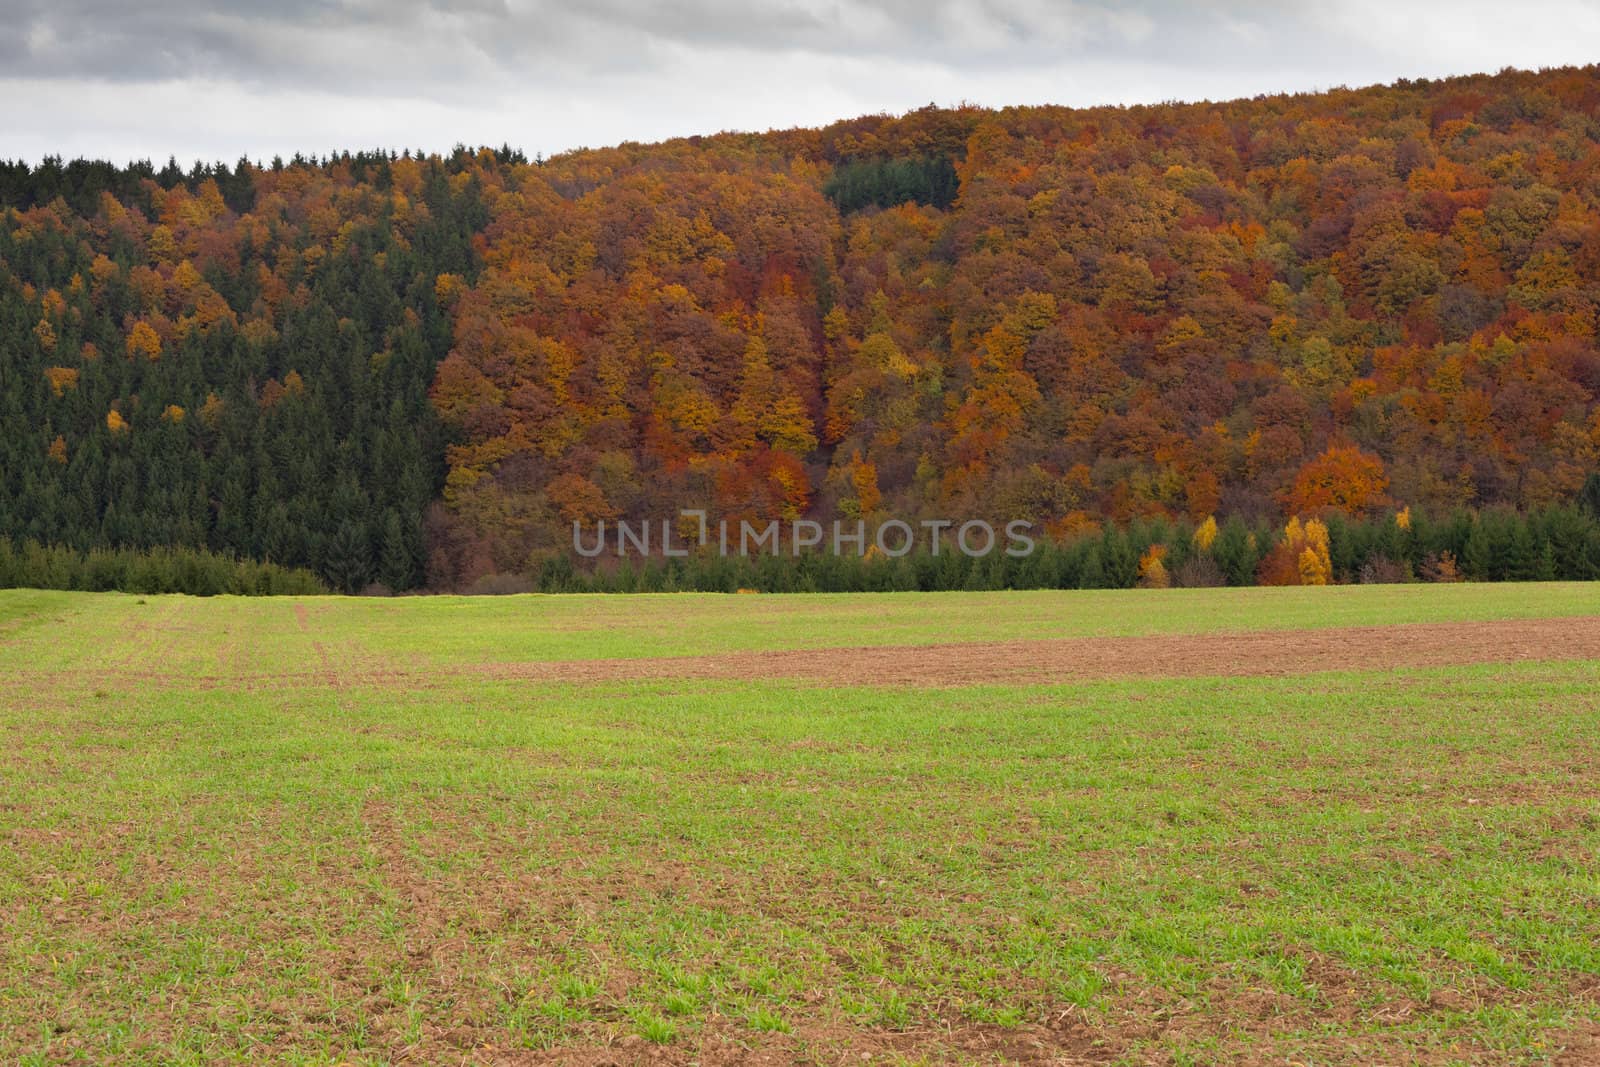 Winter grain on field in fall by PiLens